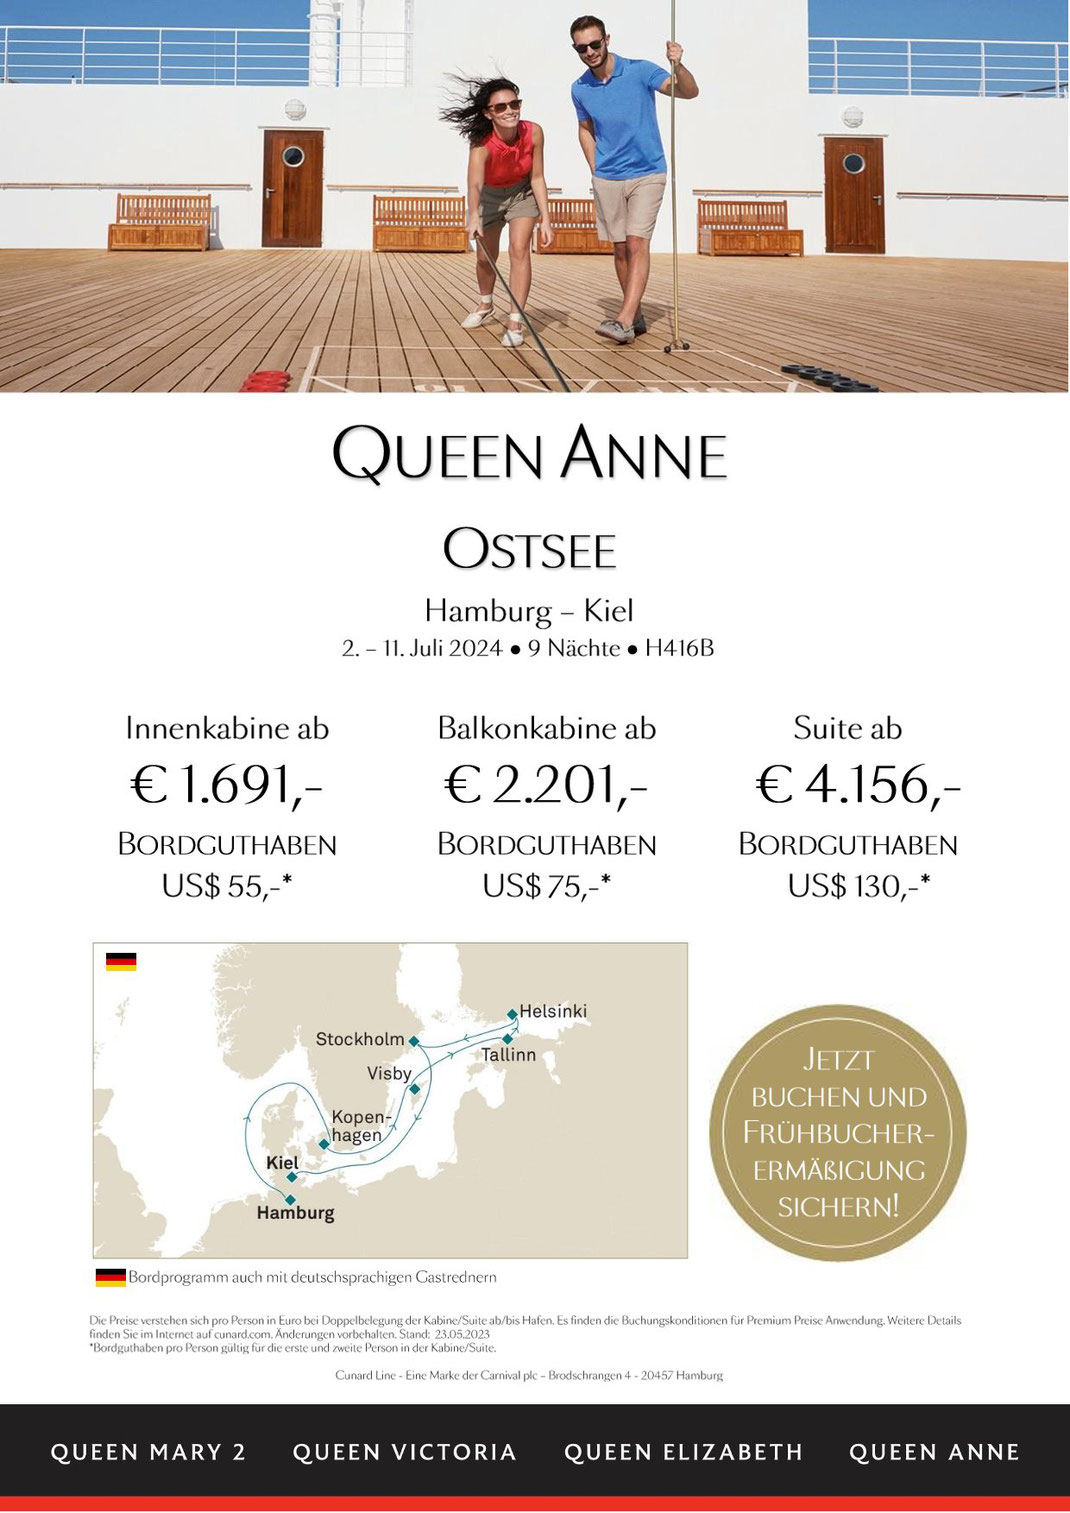 Cunard Ostsee Luxuskreuzfahrt mit MS Queen Anne 2. - 11. Juli 2024 9 Nächte ab Hamburg bis Kiel Balkonkabine inkl. $ 75,- Premium Bordguthaben p. P. ab € 2.201,-*